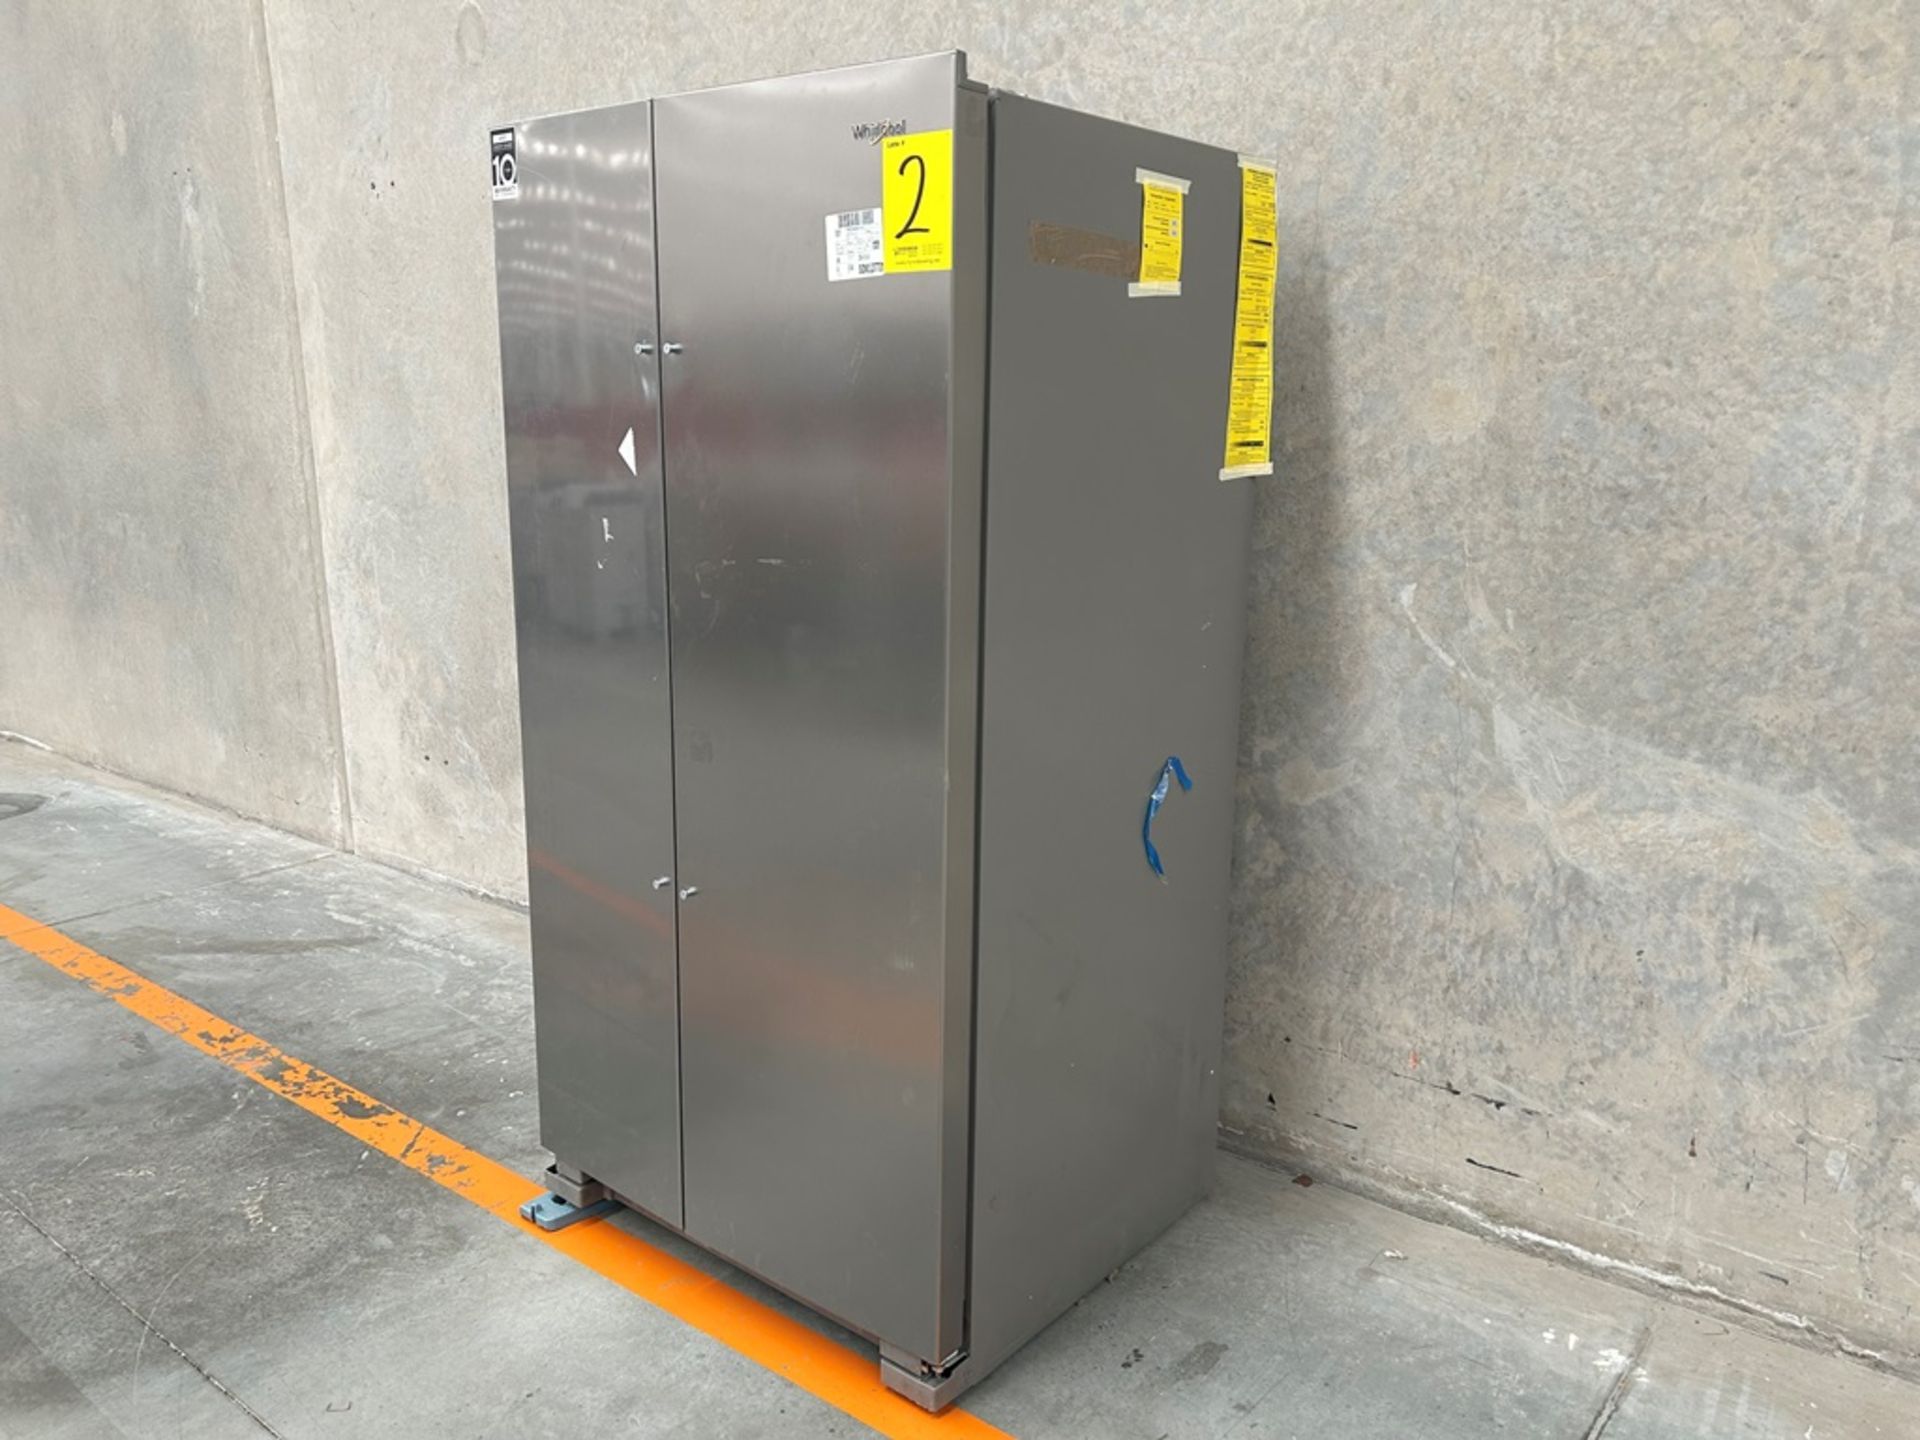 Refrigerador Marca WHIRLPOOL, Modelo WD5600S, Serie 813311, Color GRIS (Equipo de Devolución) - Image 2 of 9